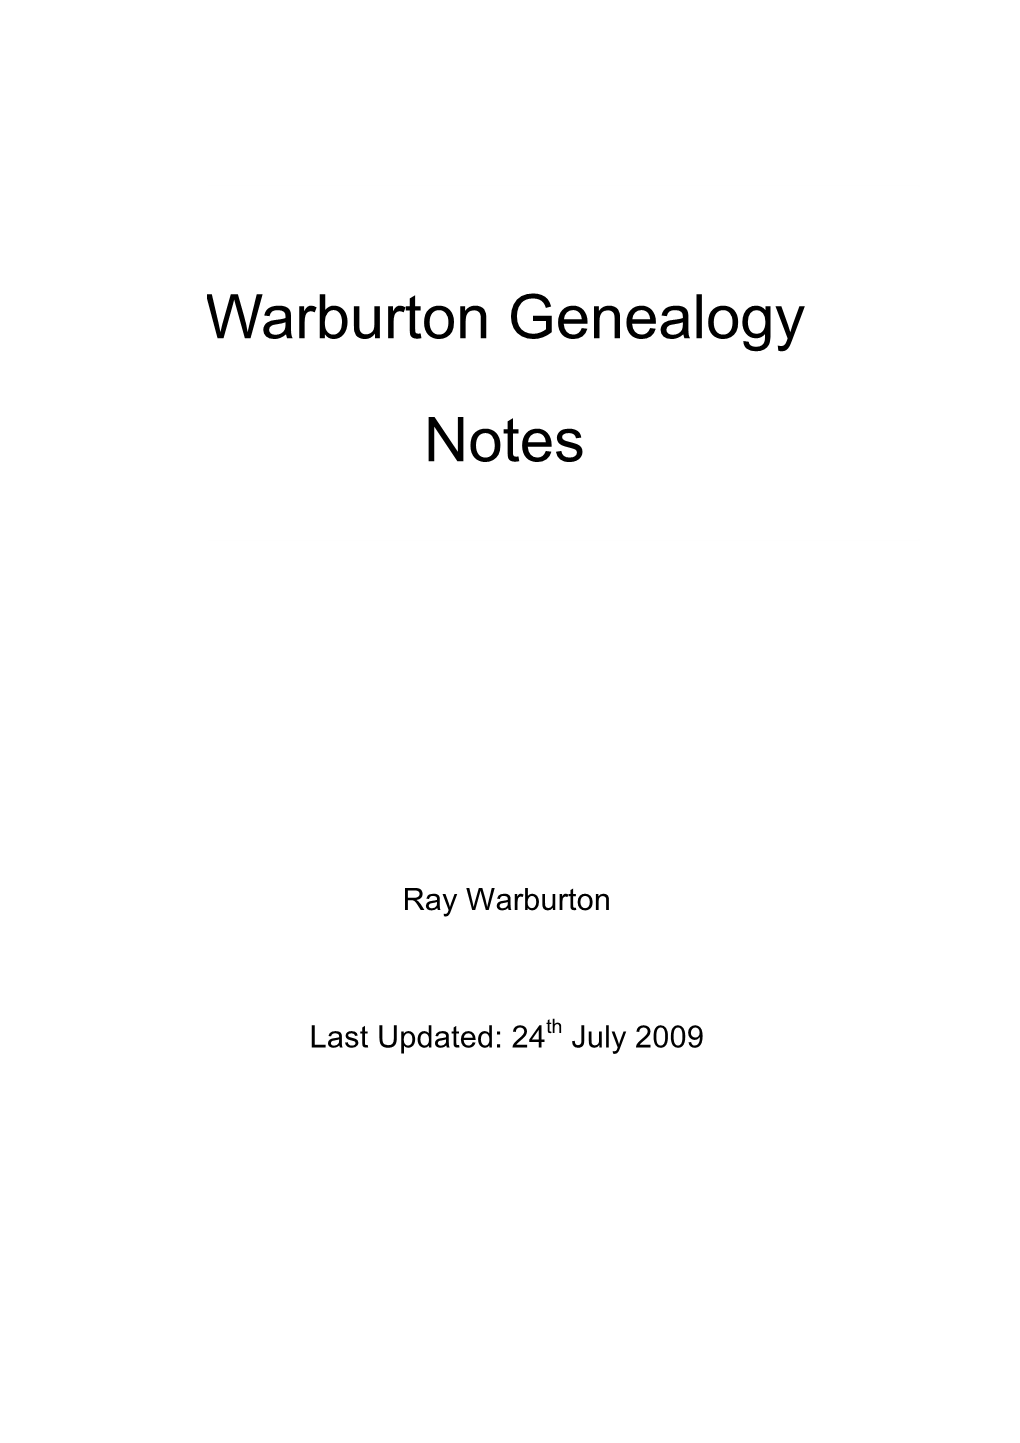 Warburton Genealogy Notes